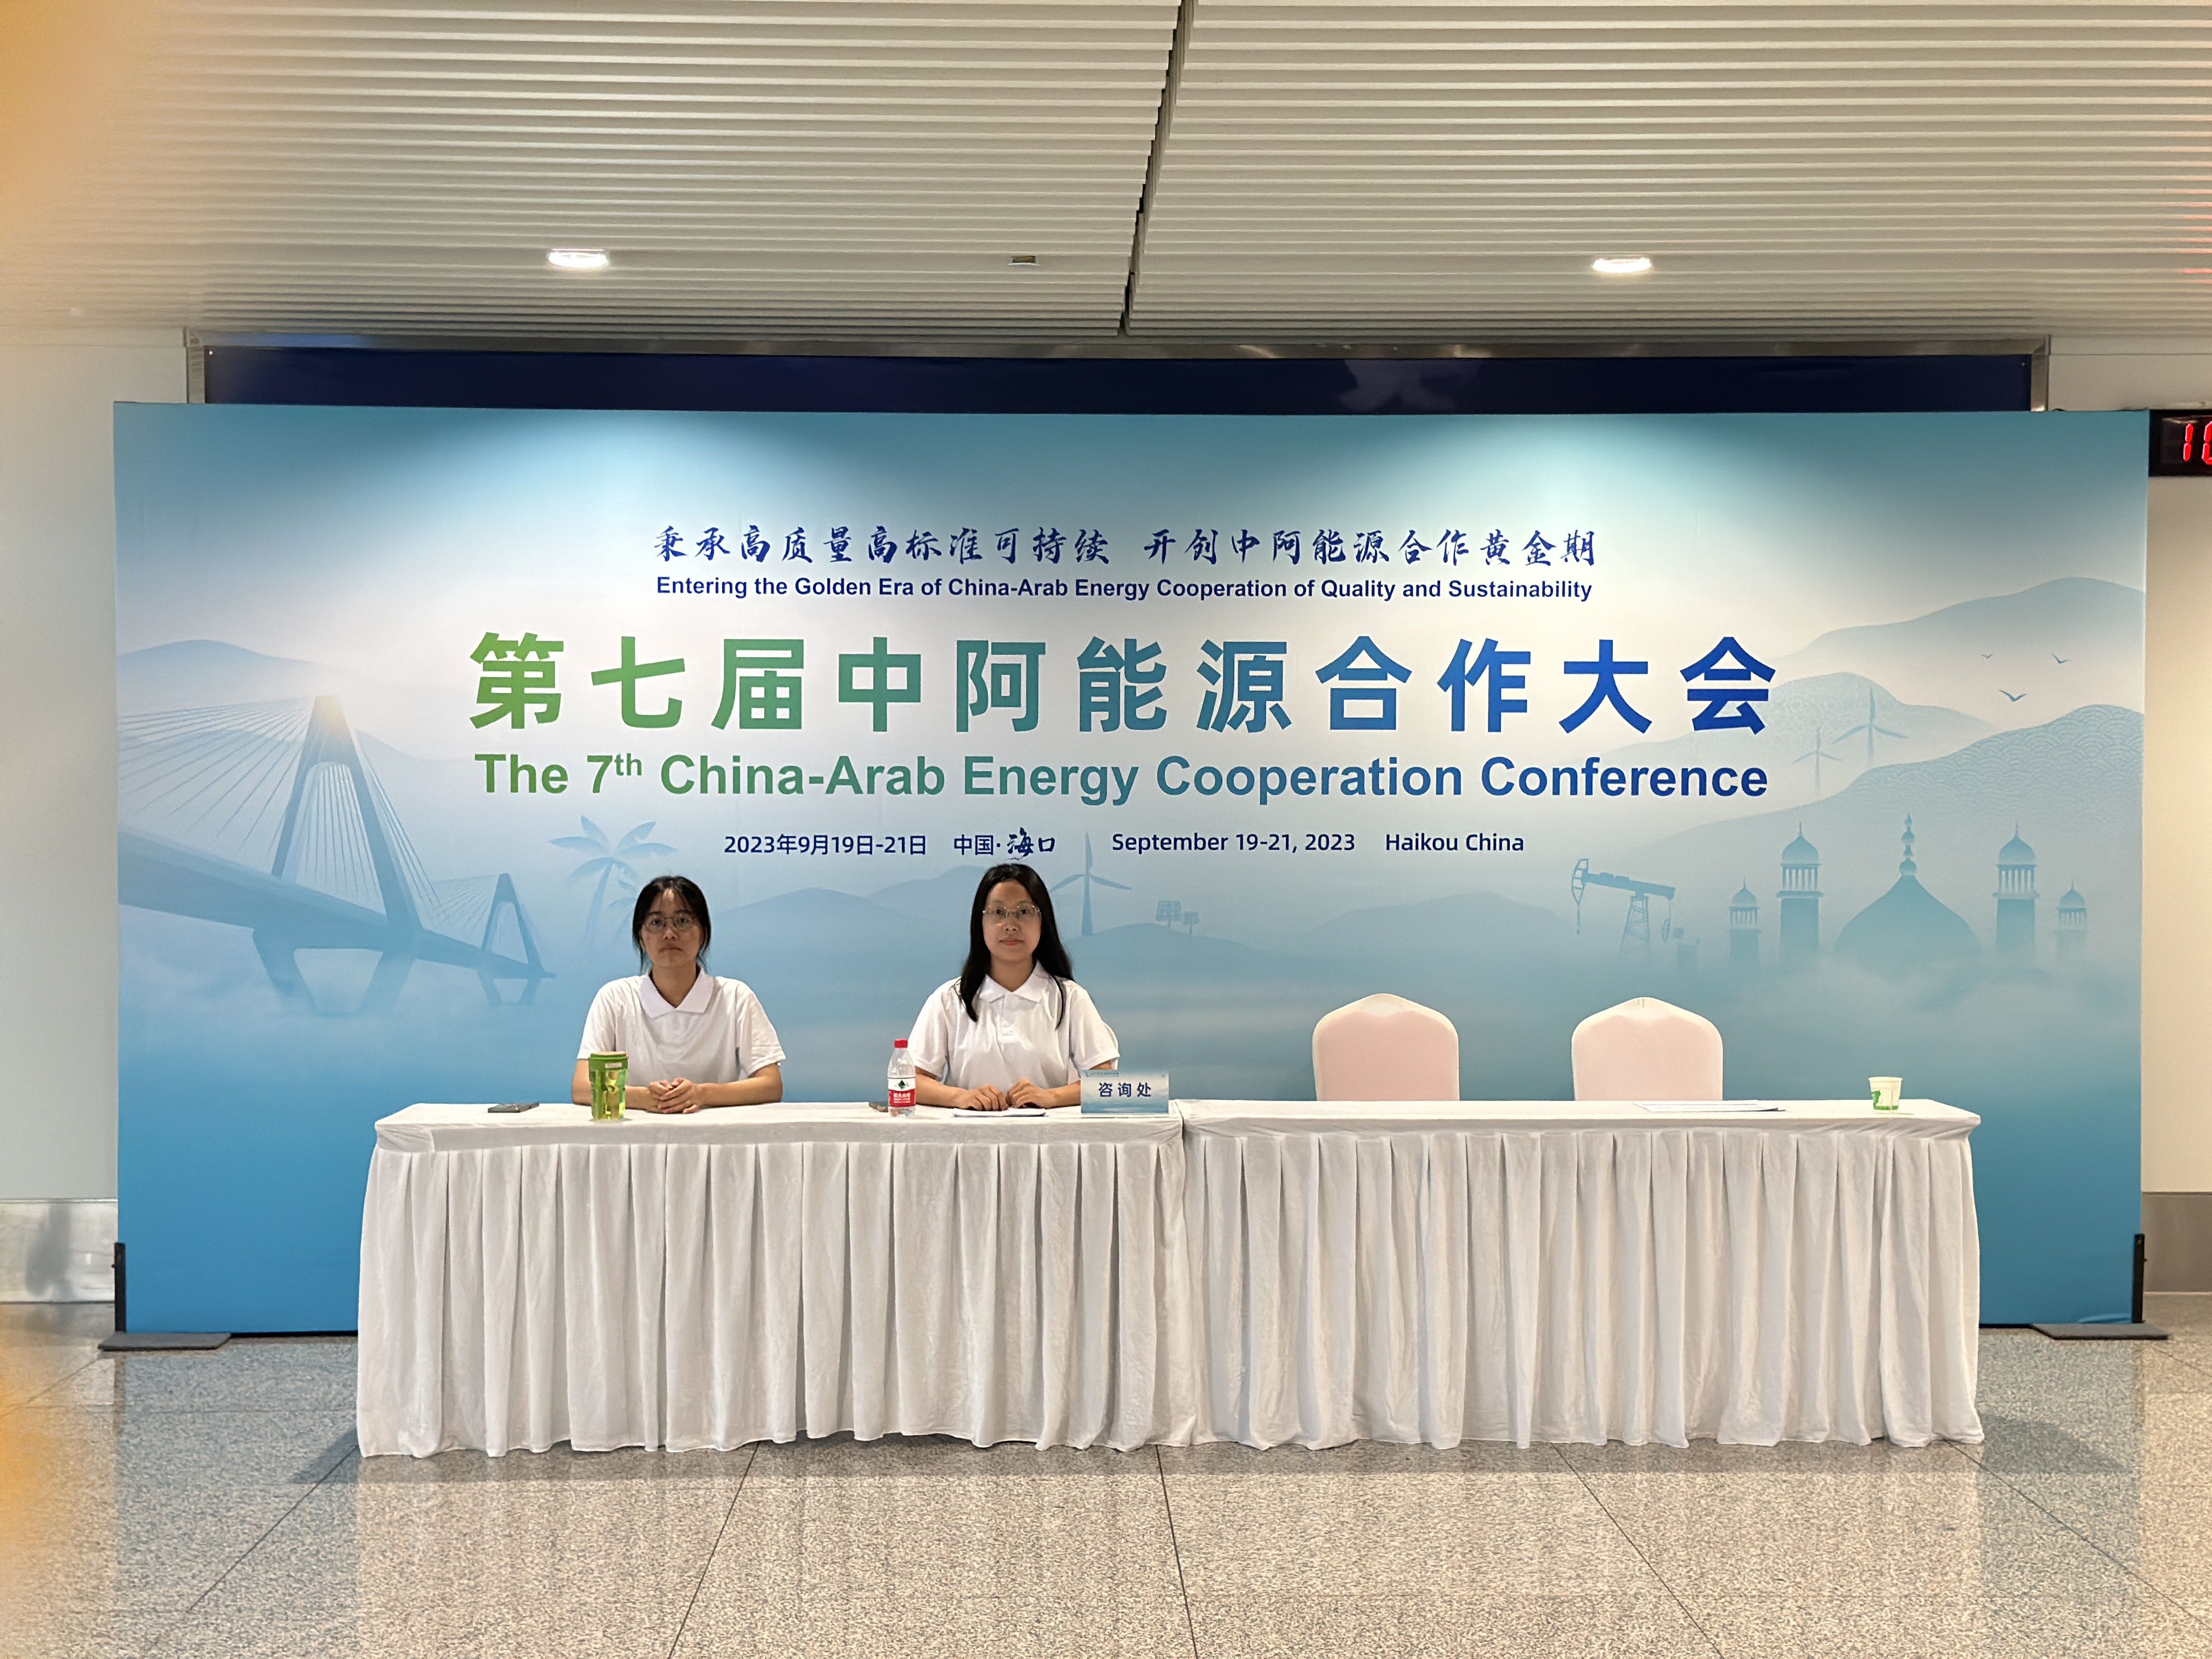 美兰机场顺利完成“中国-东盟清洁能源合作周”“中阿能源合作大会”服务保障